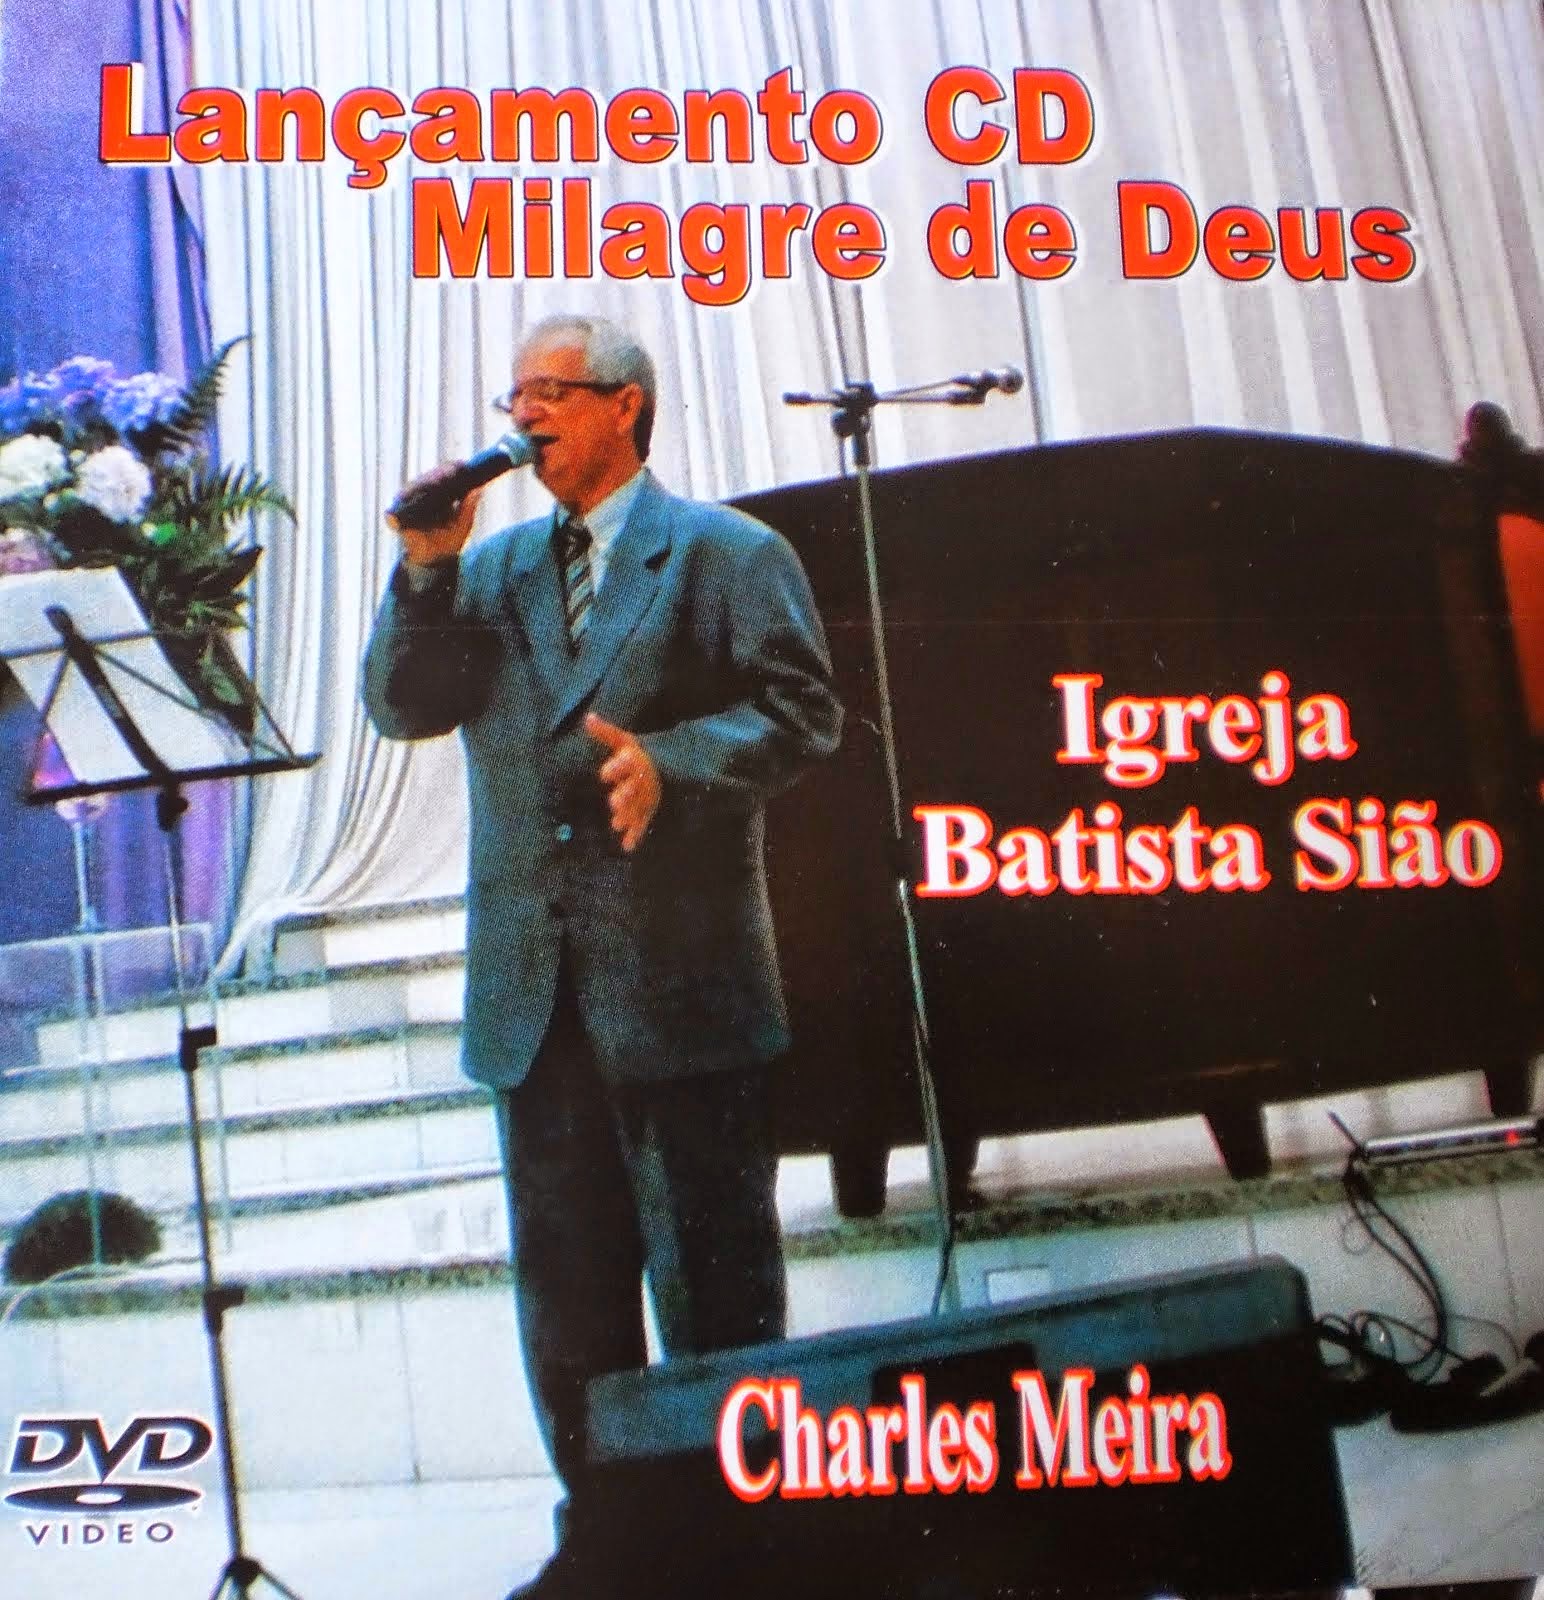 DVD do lançamento do CD "Milagre de Deus" do cantor Charles Meira na Igreja Batista Sião